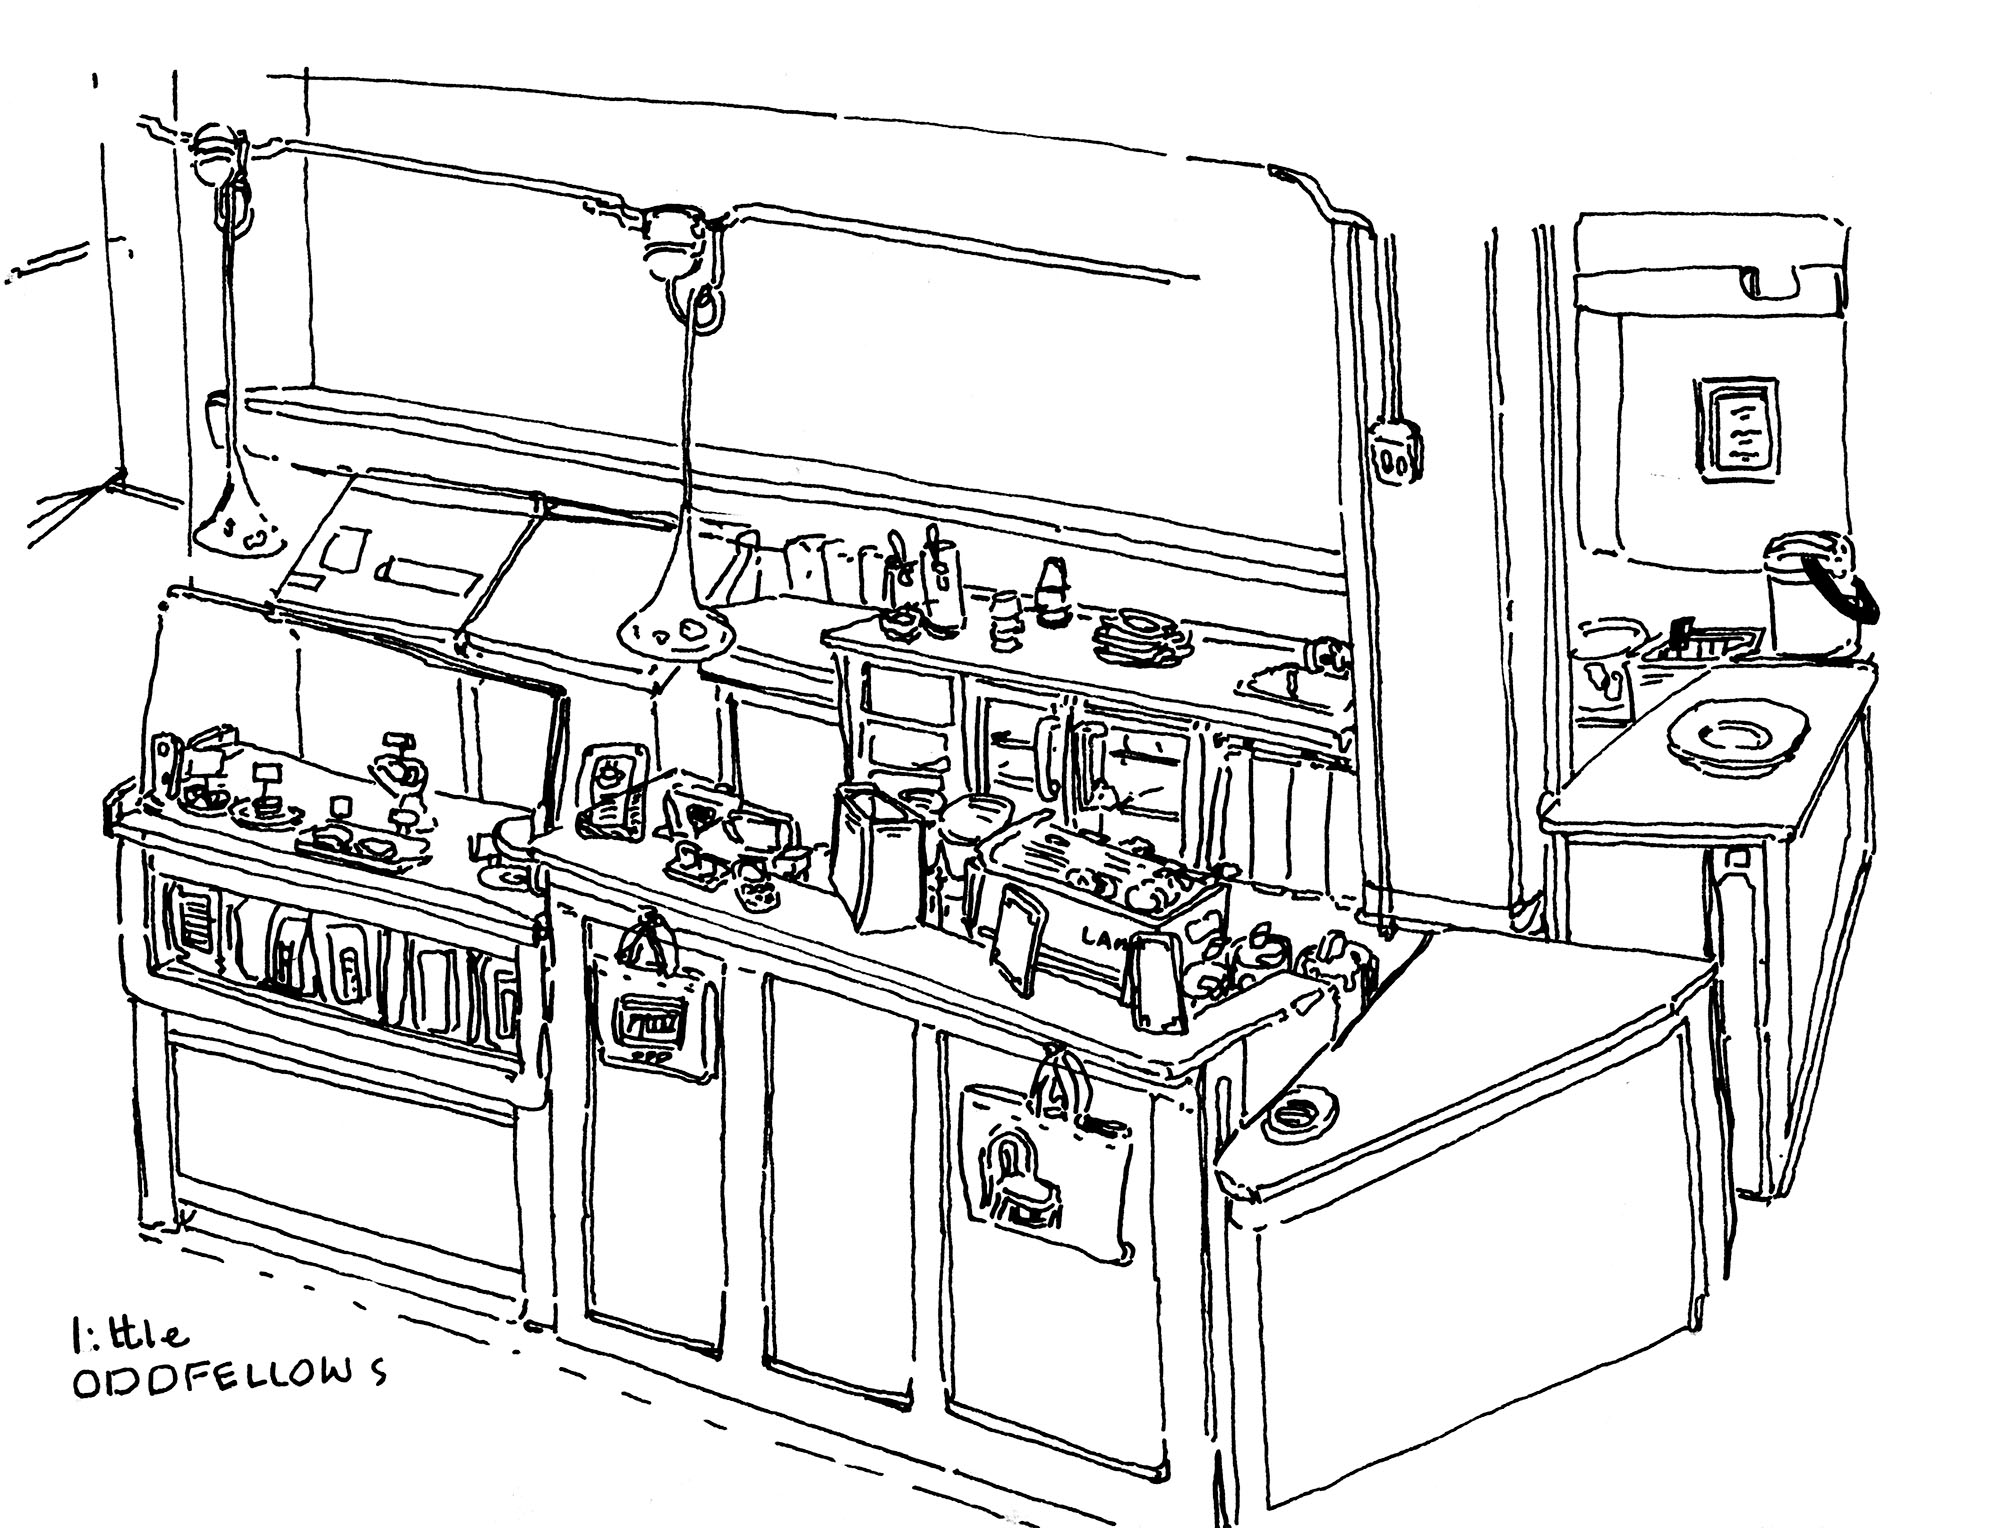 A cafe counter